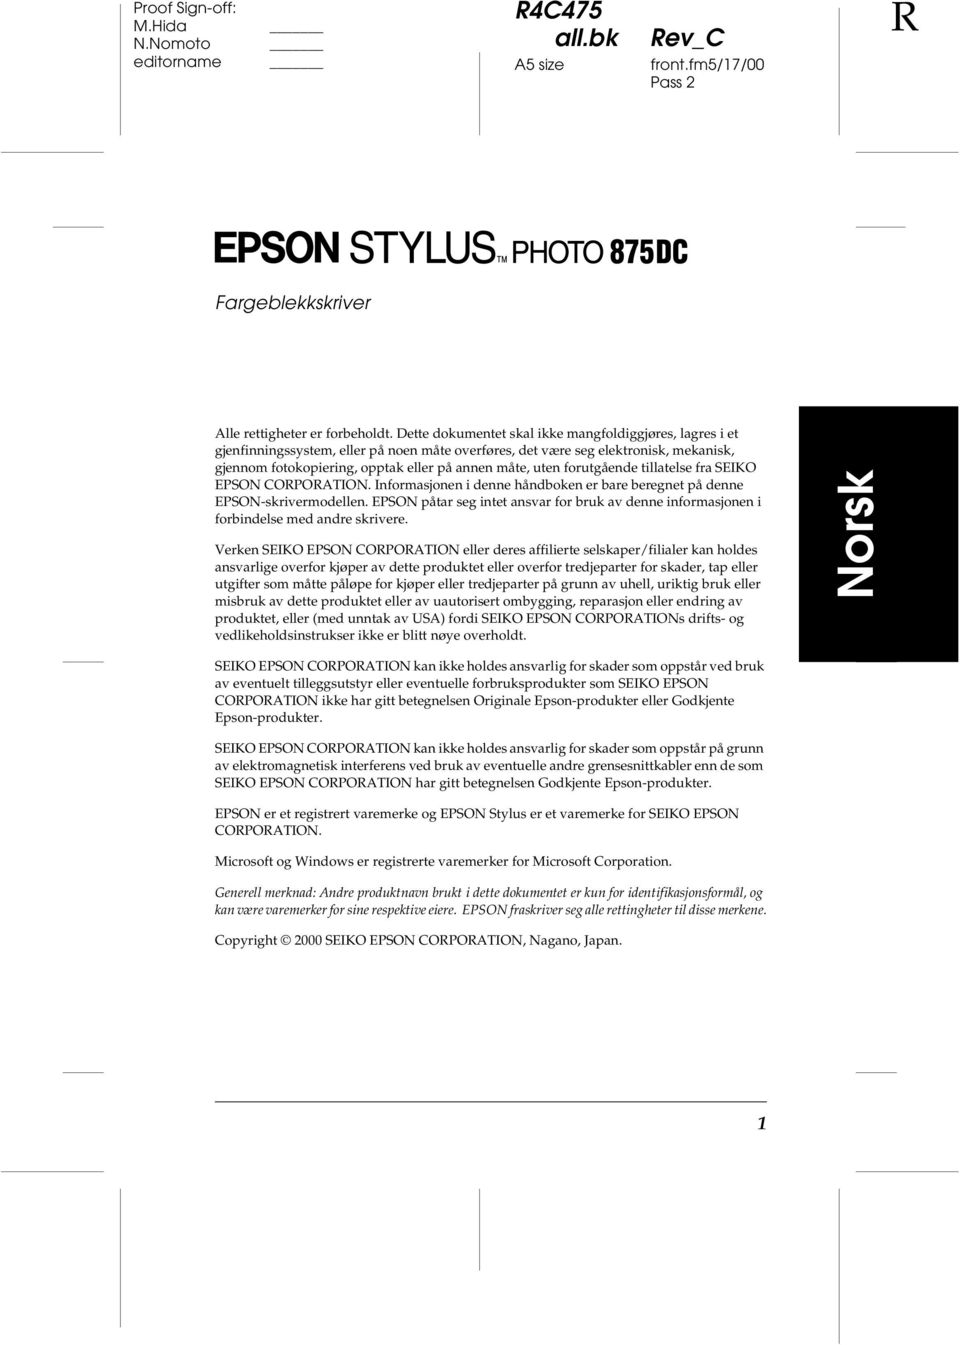 forutgående tillatelse fra SEIKO EPSON CORPORATION. Informasjonen i denne håndboken er bare beregnet på denne EPSON-skrivermodellen.